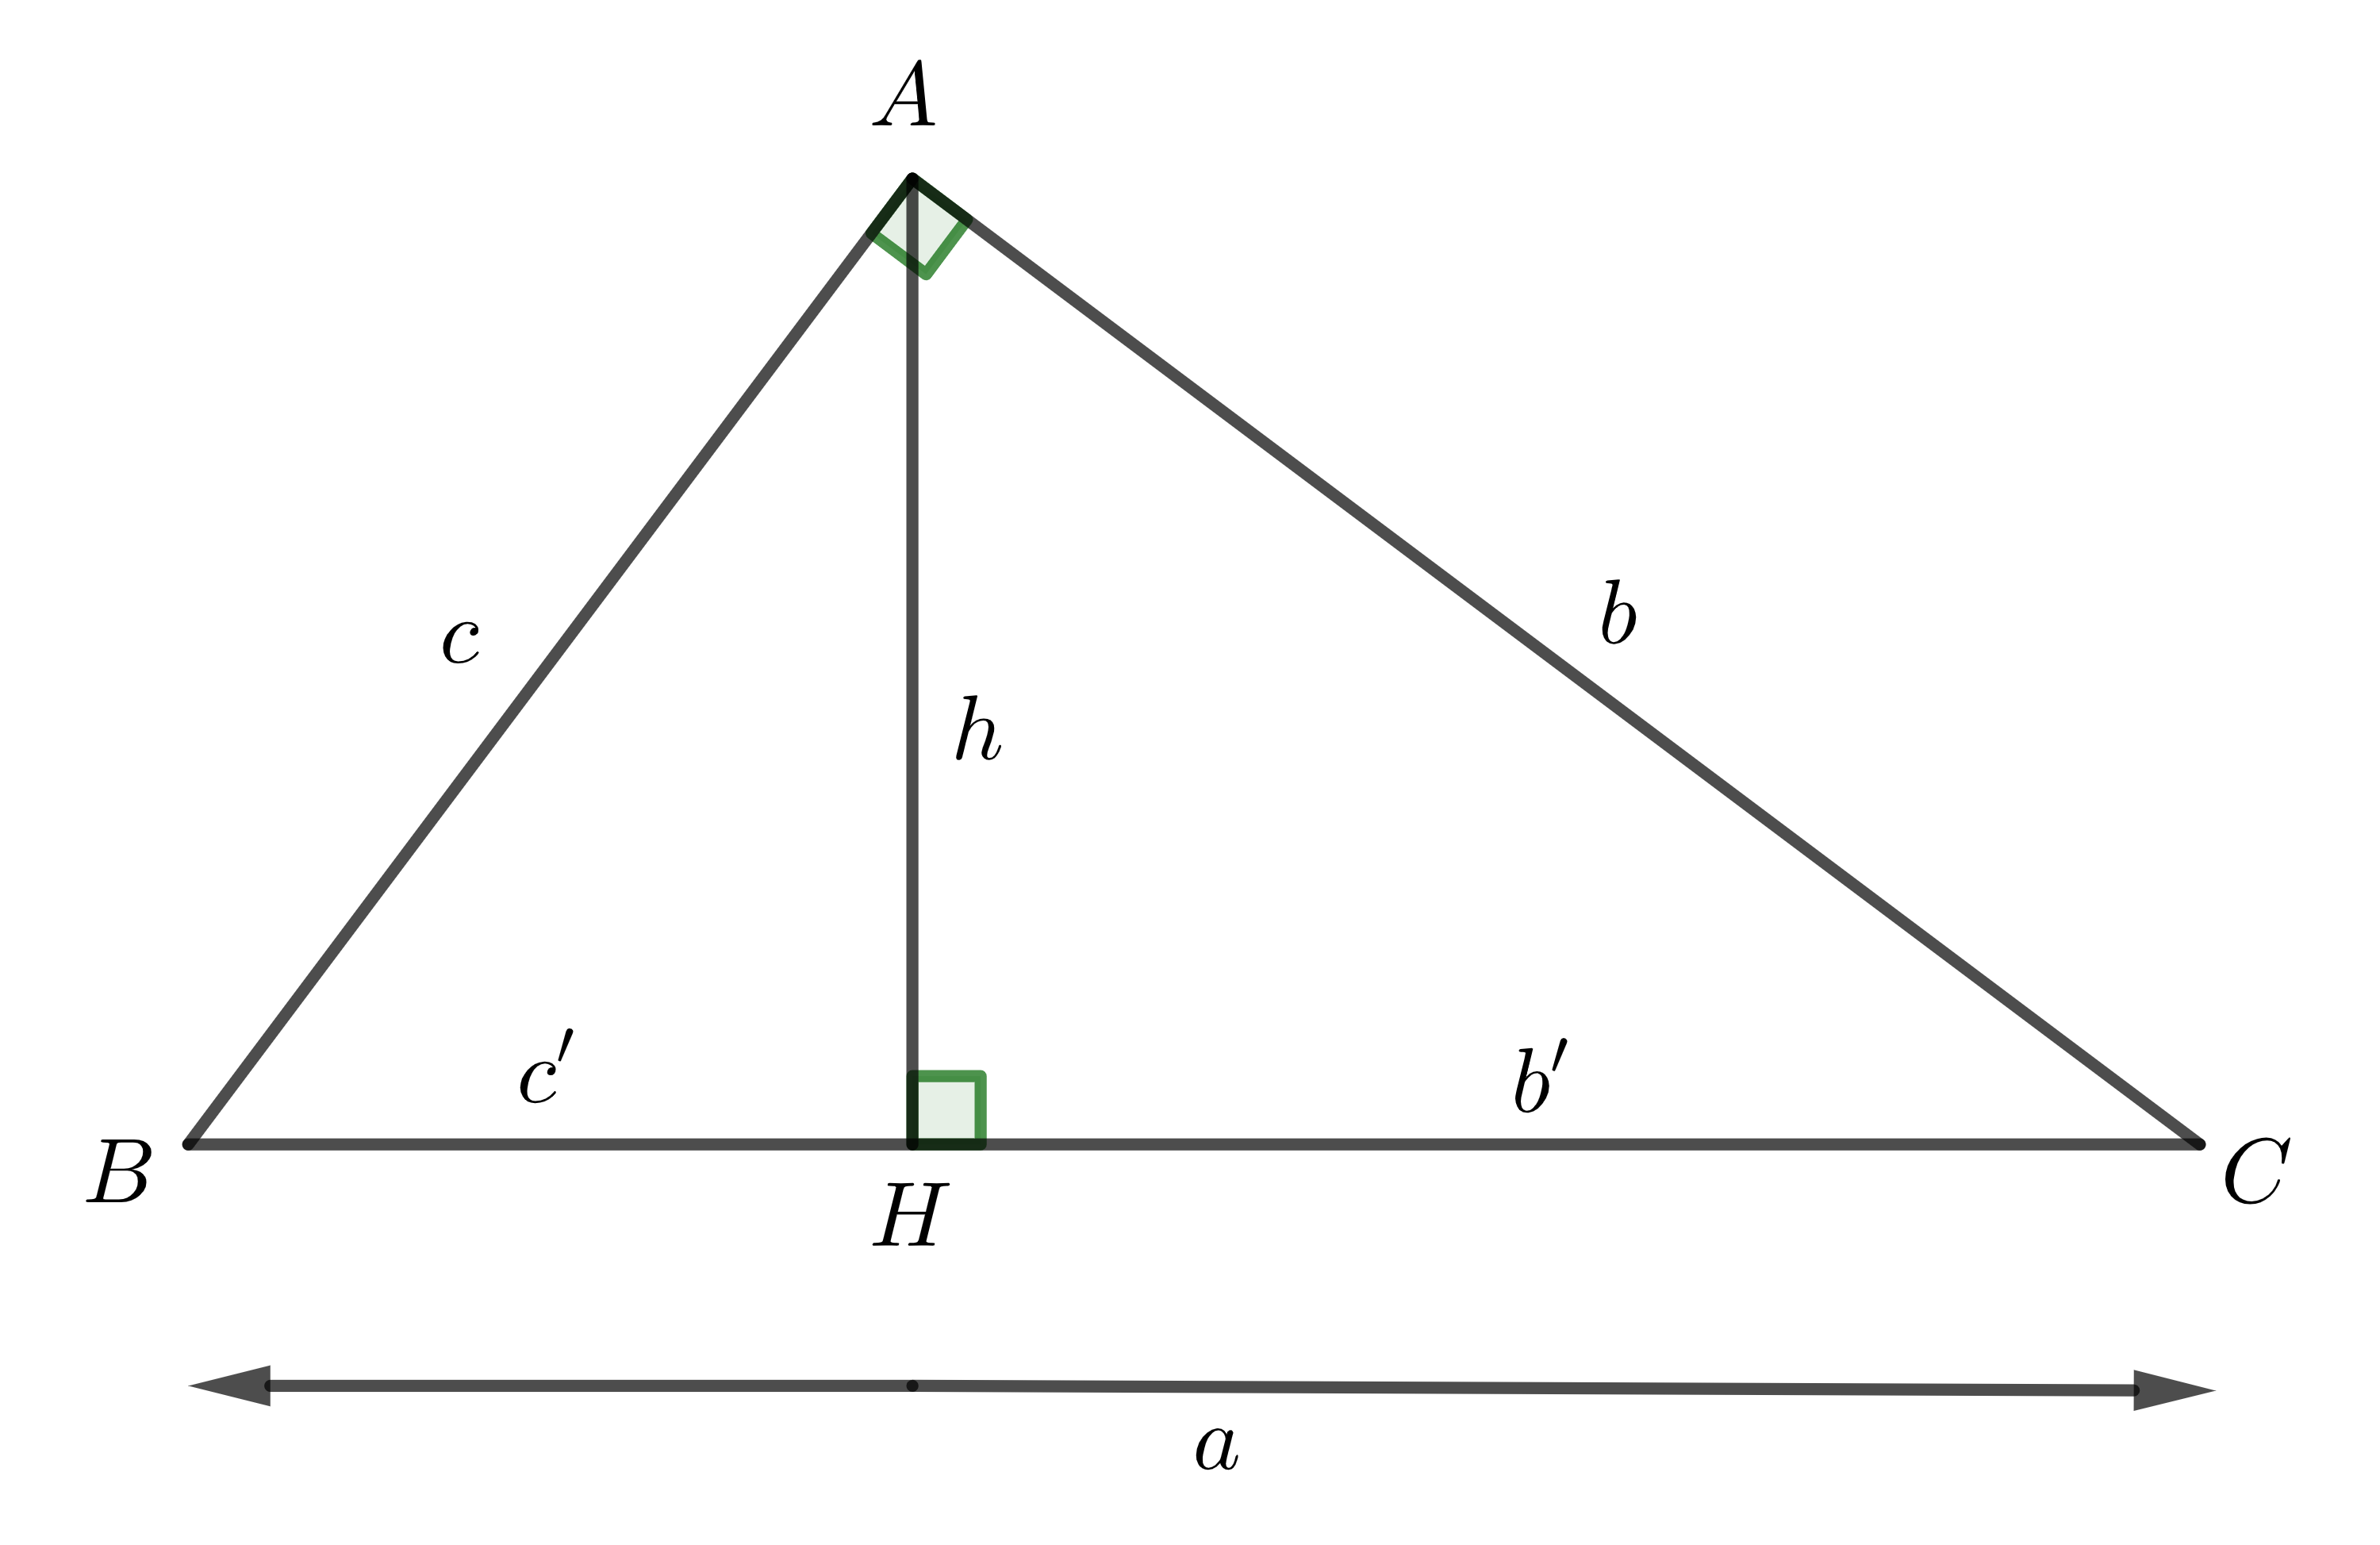 đường cao trong tam giác vuông